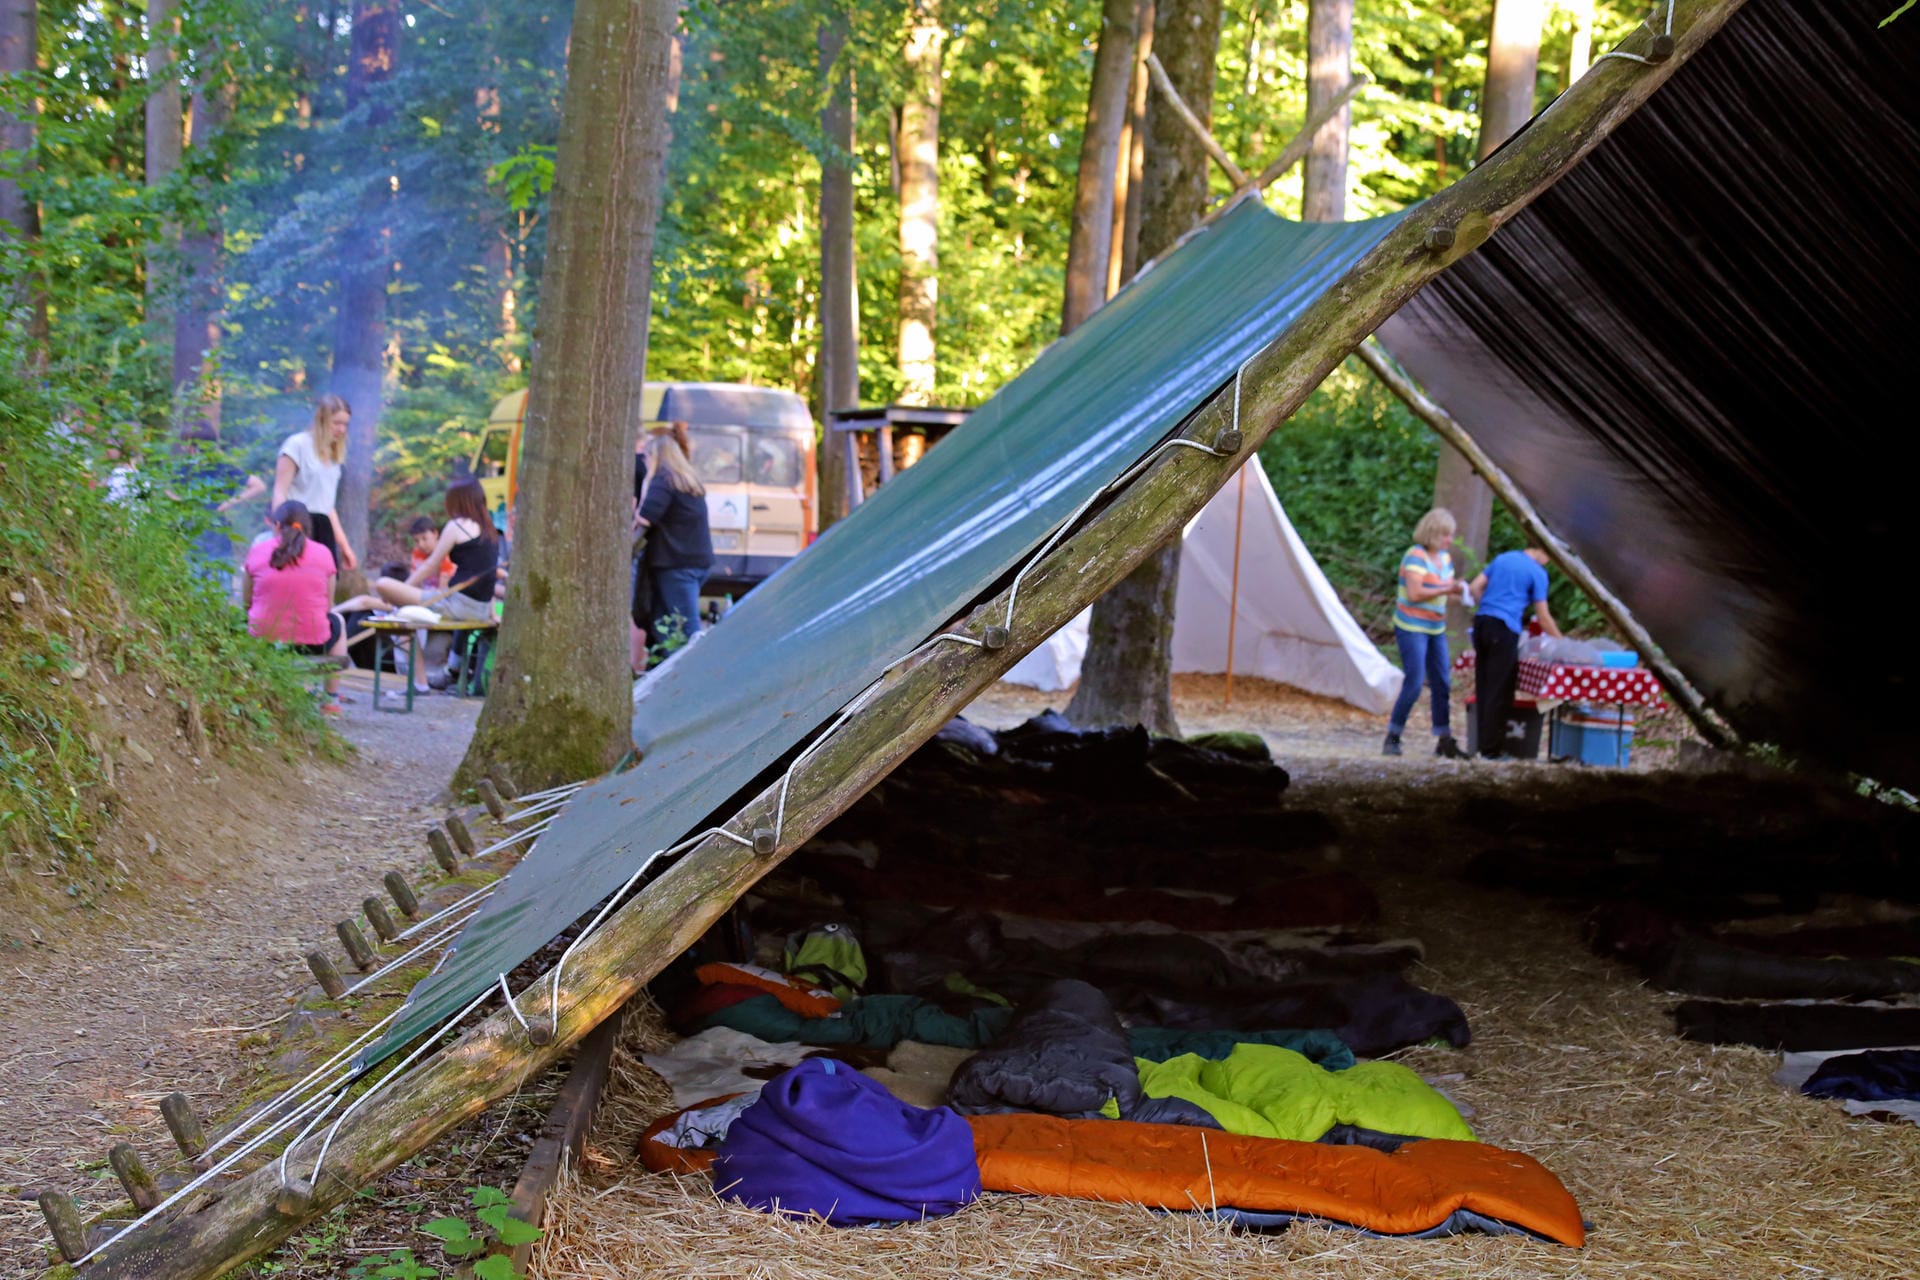 Draußen campen und nachts die Wölfe heulen hören - das können Besucher im Wildpark Bad Mergentheim erleben.